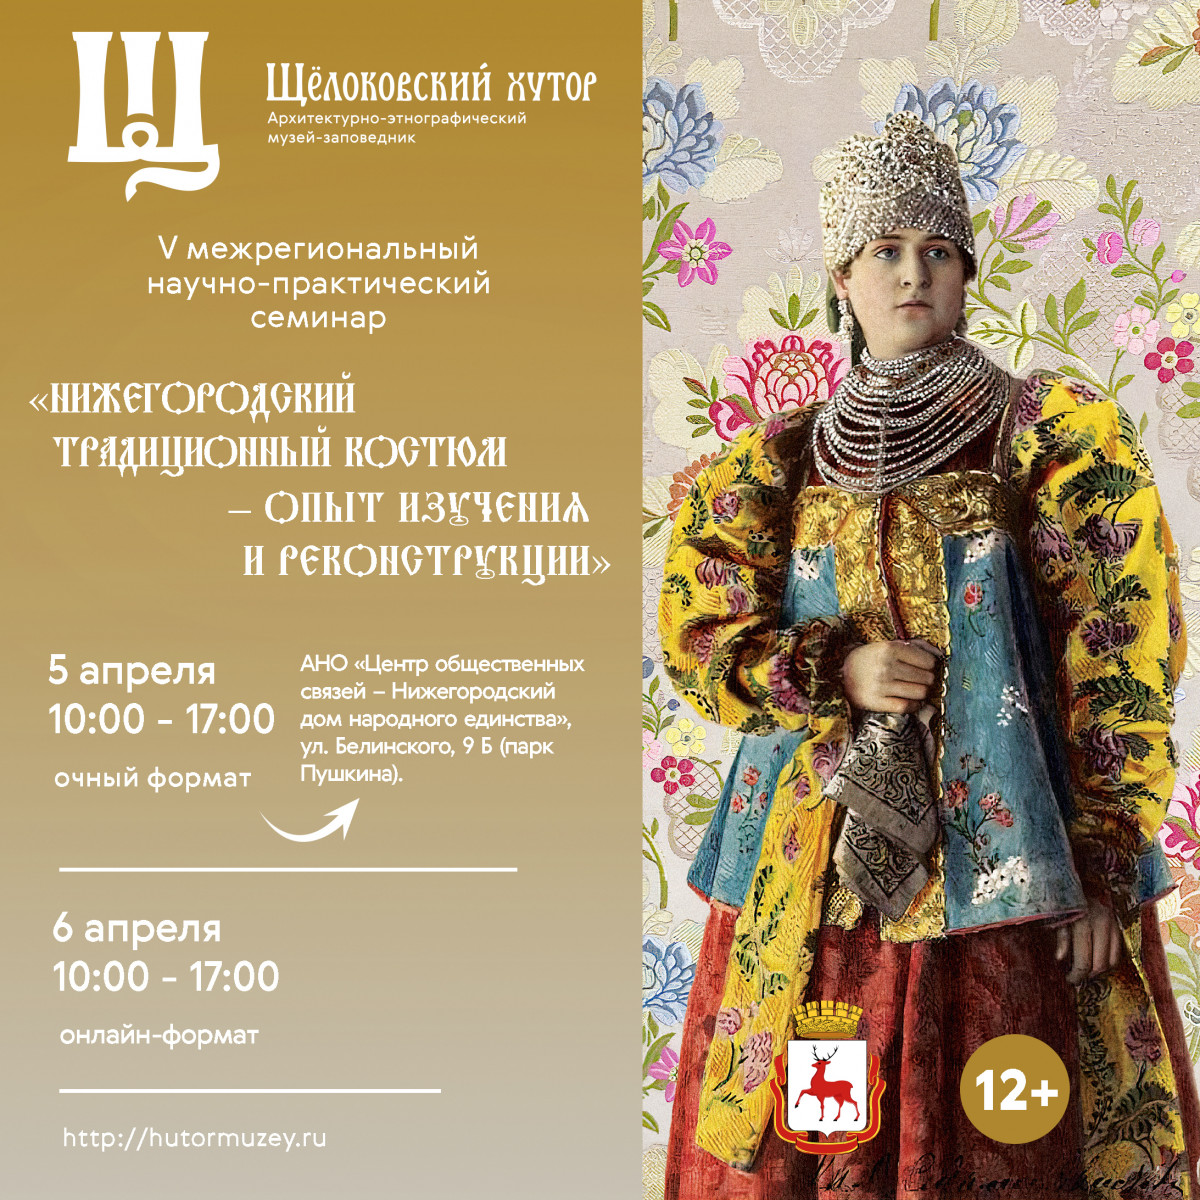 Межрегиональный семинар «Нижегородский традиционный костюм — опыт изучения и реконструкции» пройдет в Нижнем Новгороде